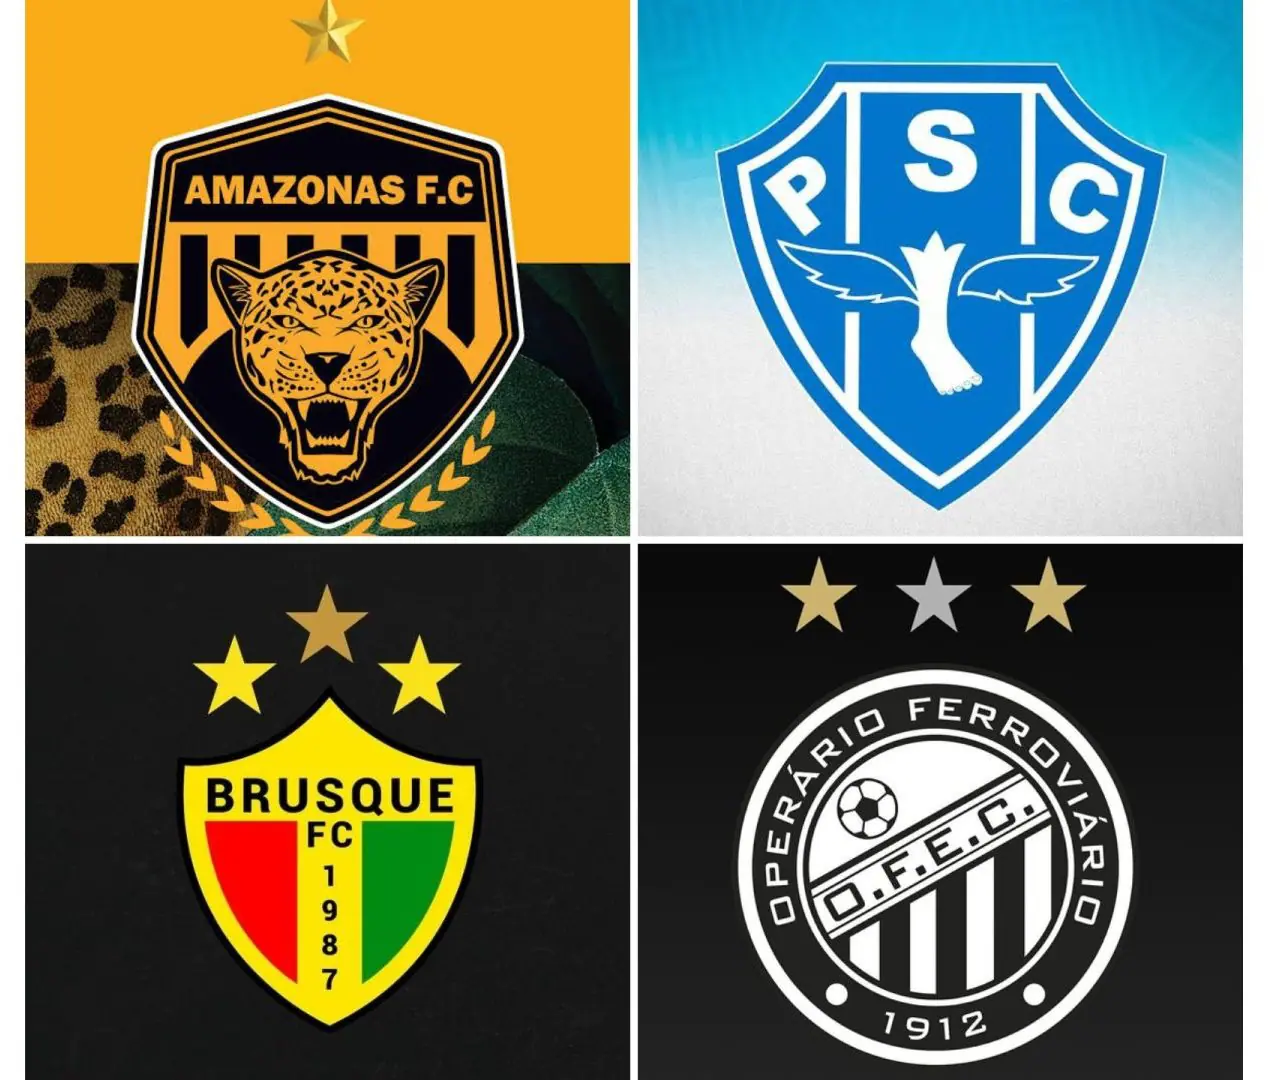 Série B de 2024 tem todos os clubes confirmados; veja a lista completa, brasileirão série b